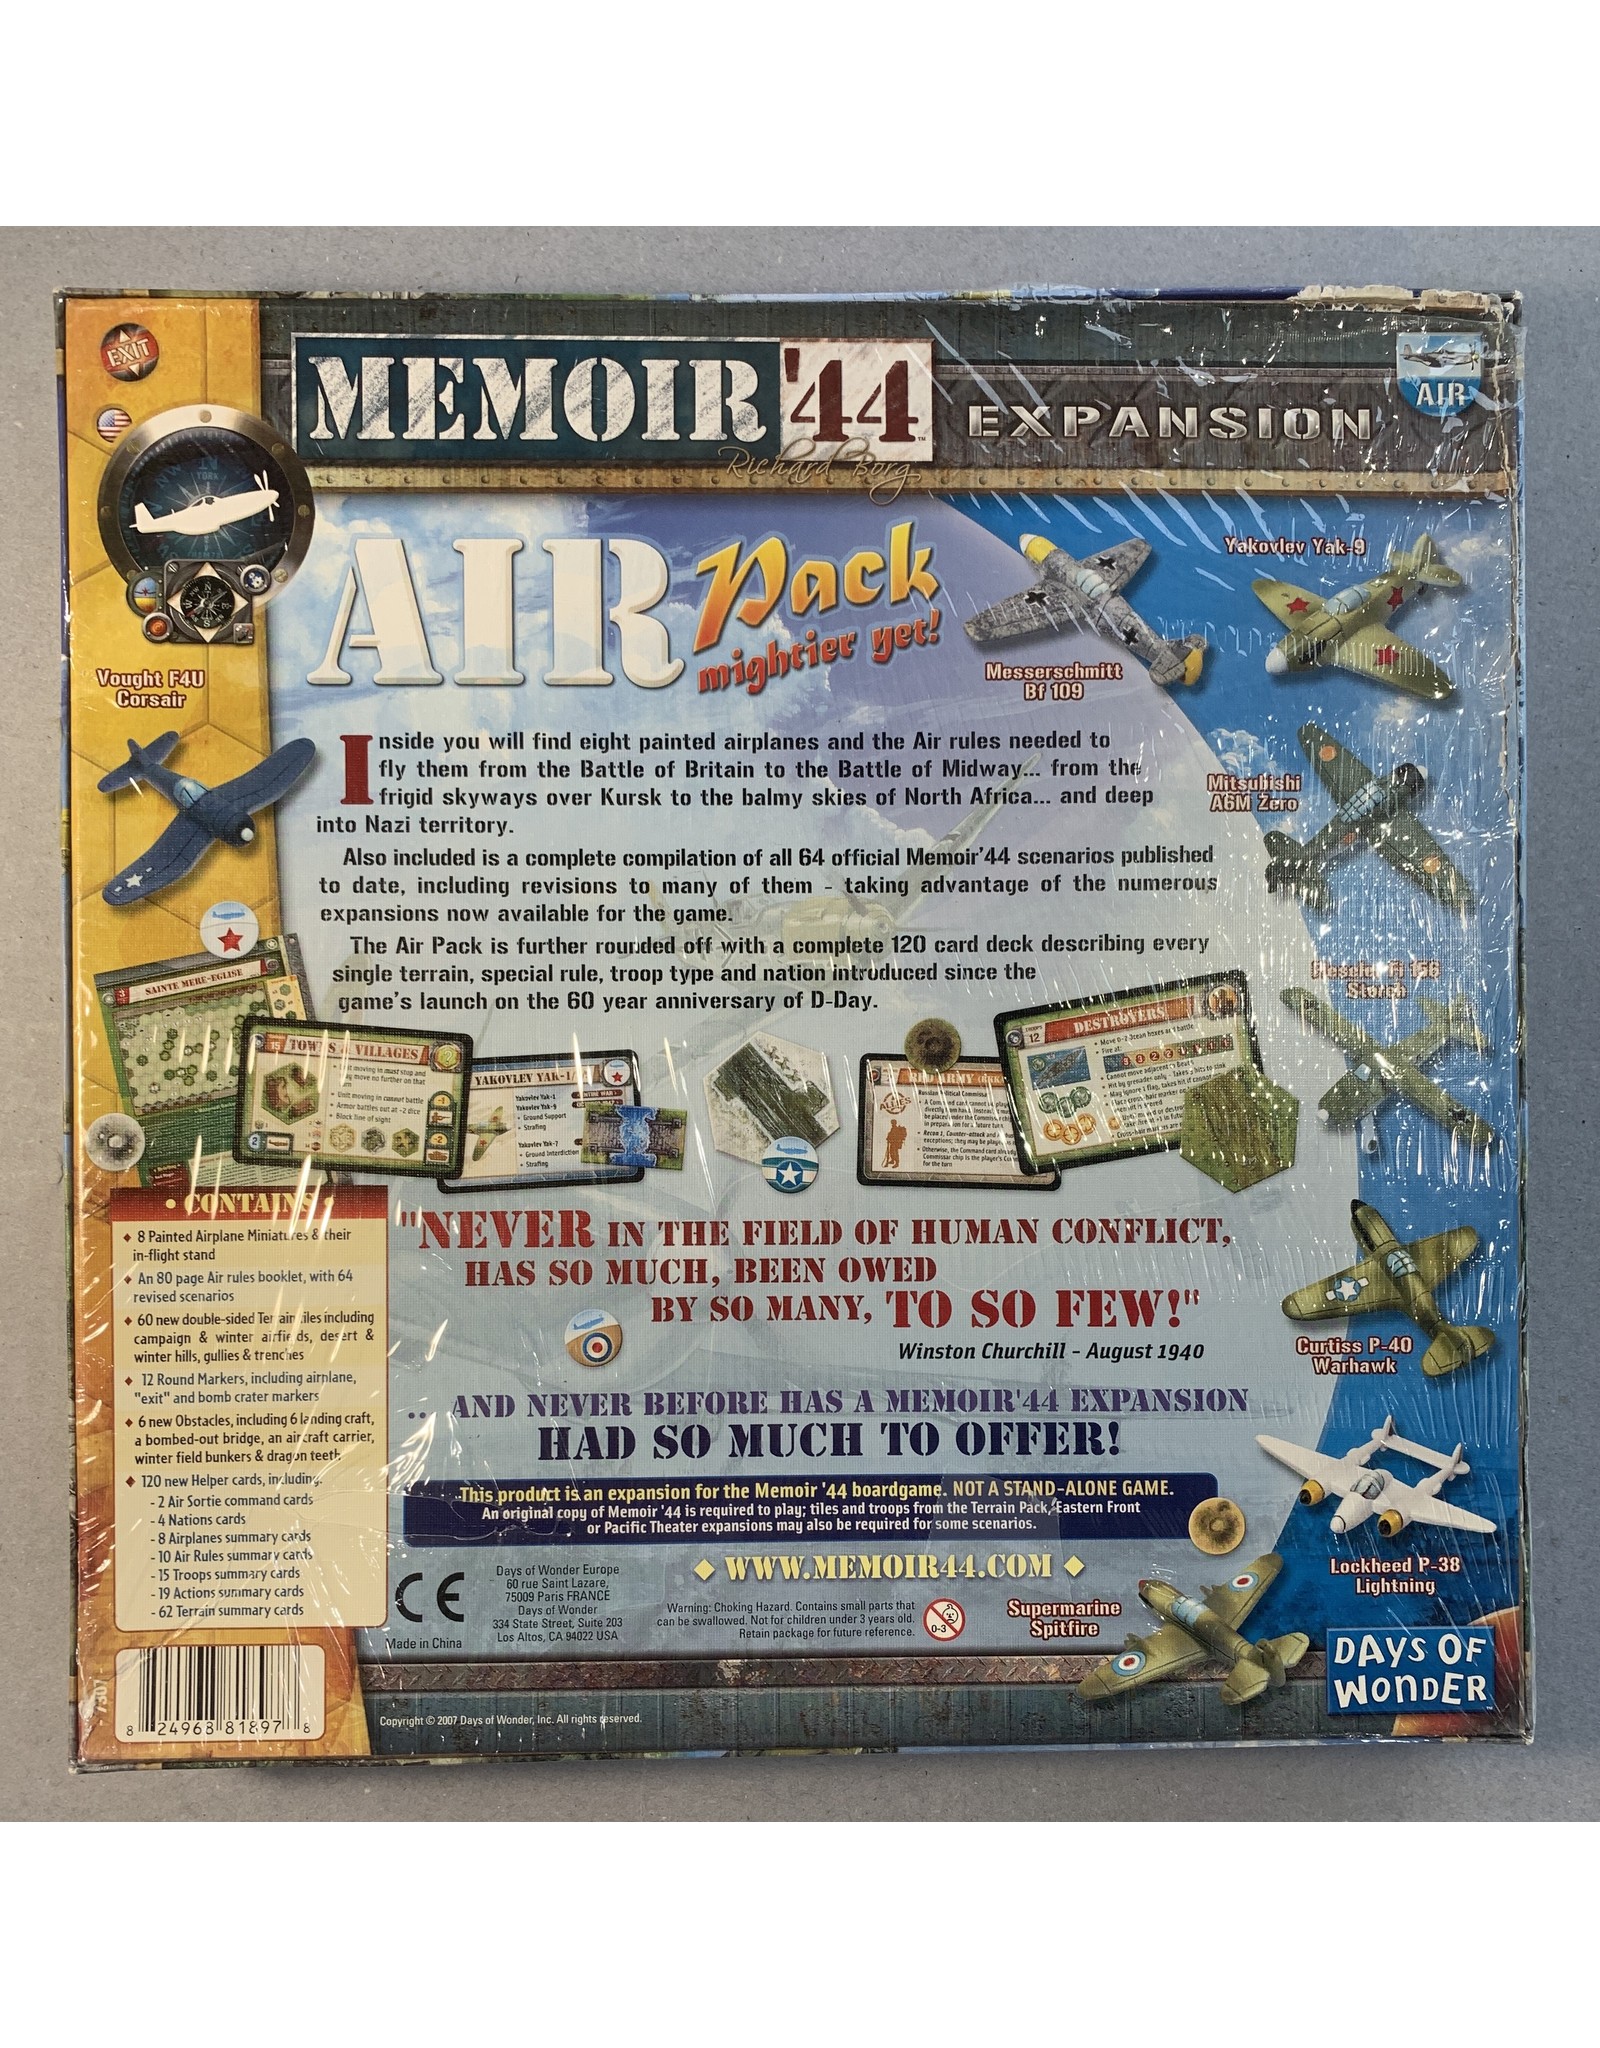 Days of Wonder Memoir 44 Air Pack Expansion Mightier Yet! (2007) NIS